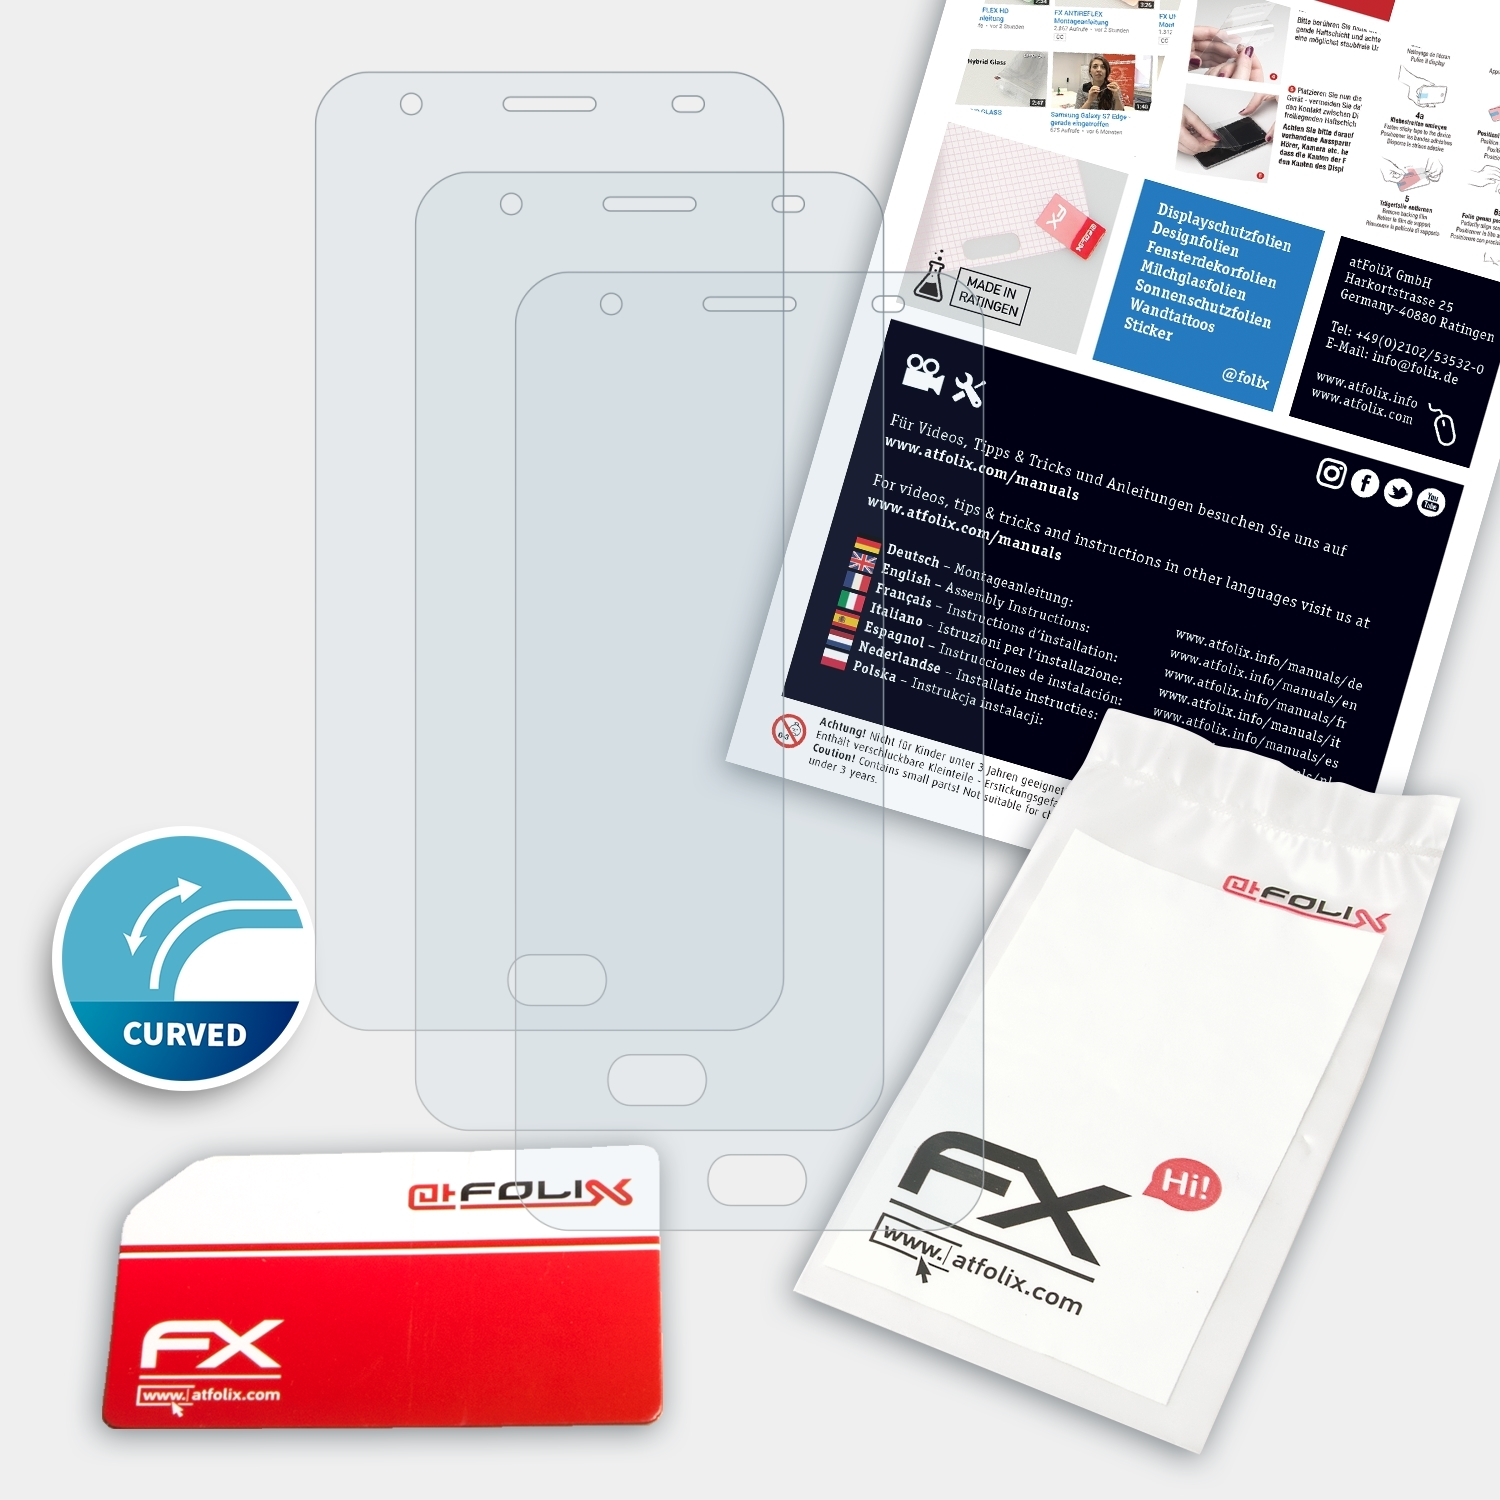 ATFOLIX 3x FX-ActiFleX Oukitel Displayschutz(für Plus) K6000